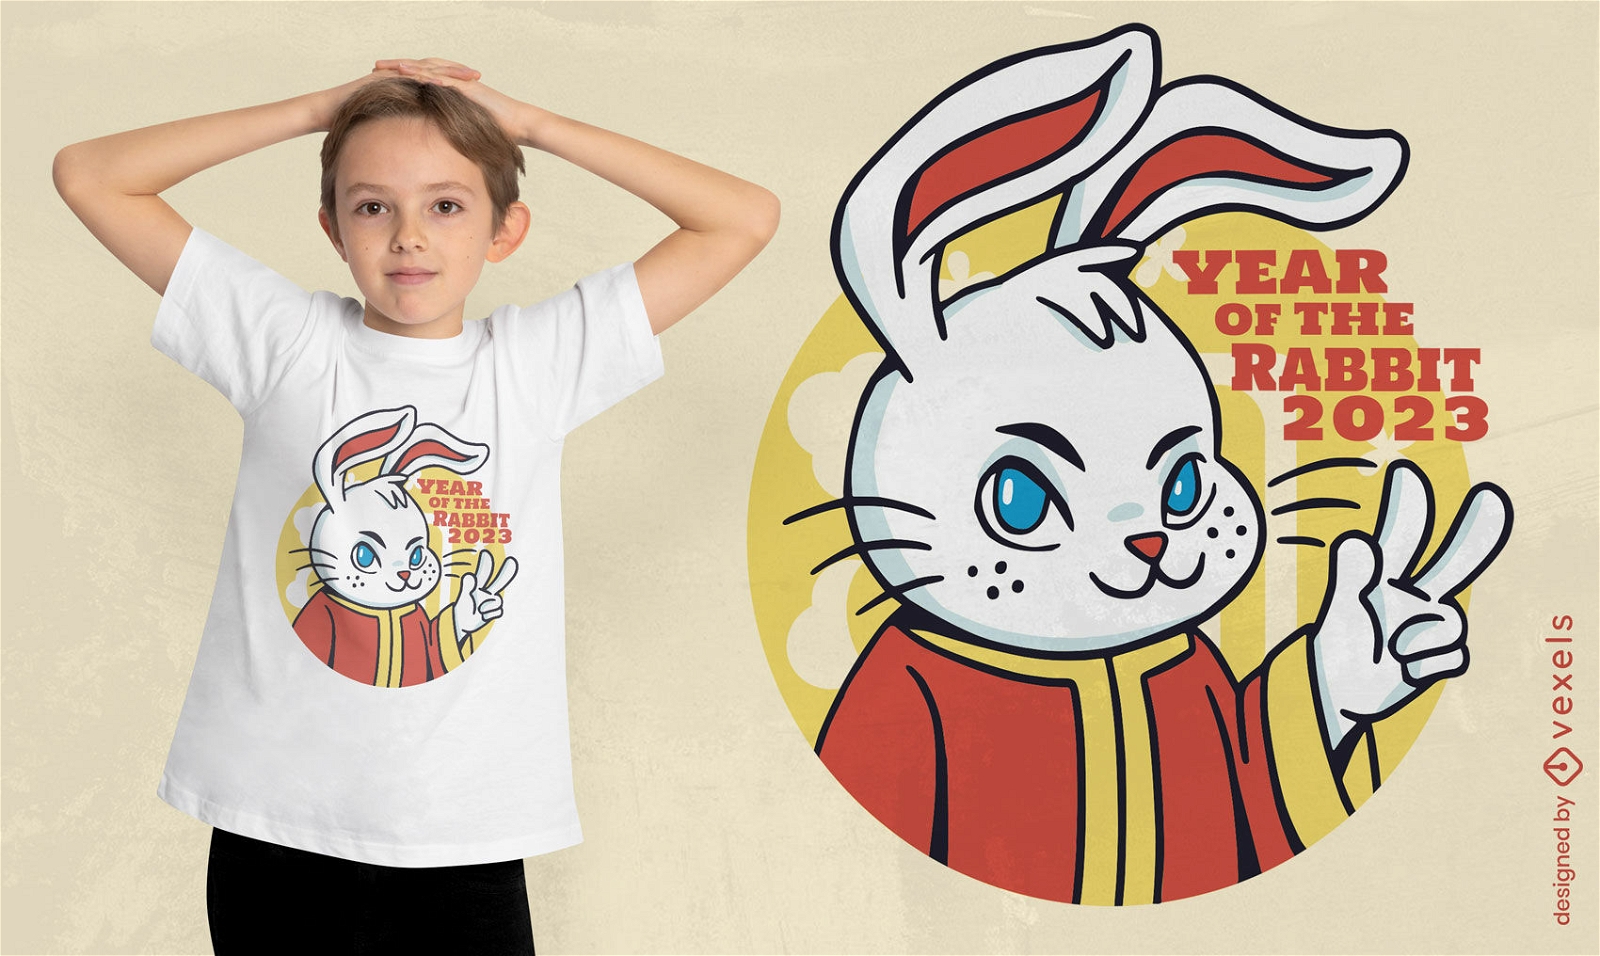 Diseño de camiseta de conejo para el año nuevo chino.